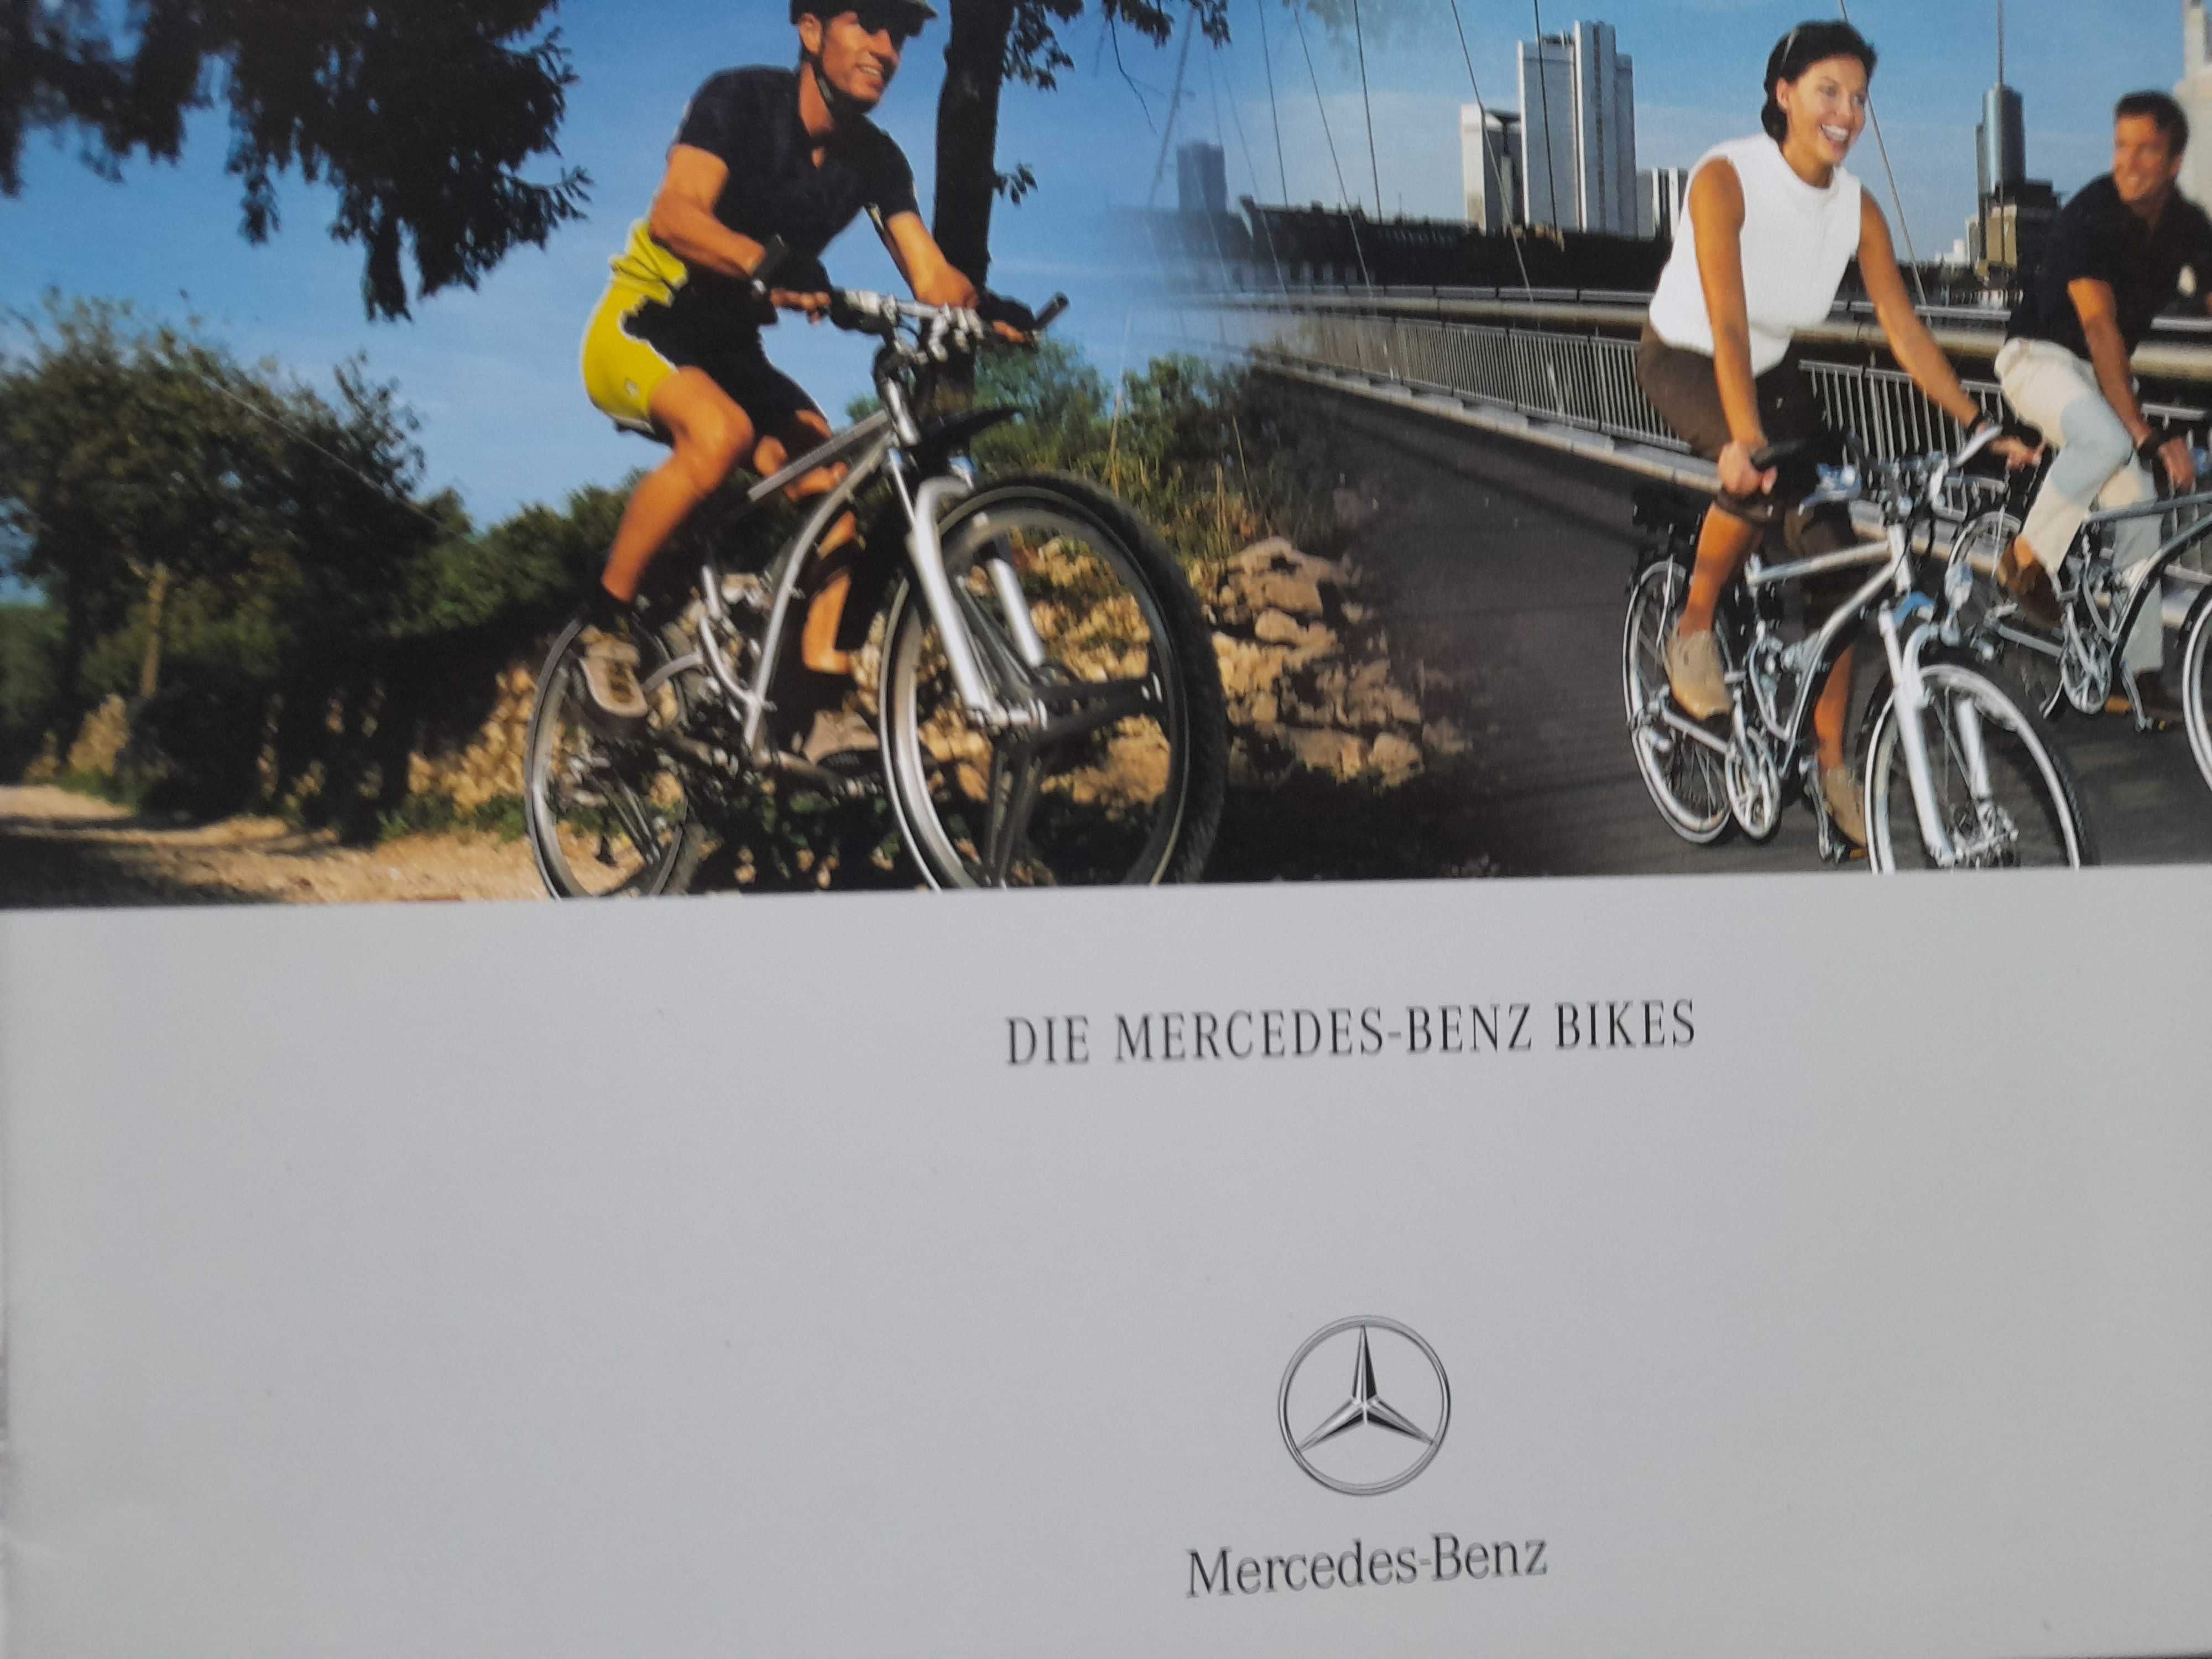 MERCEDES-BENZ Bikes rowery i akcesoria prospekt niemiecki 2002